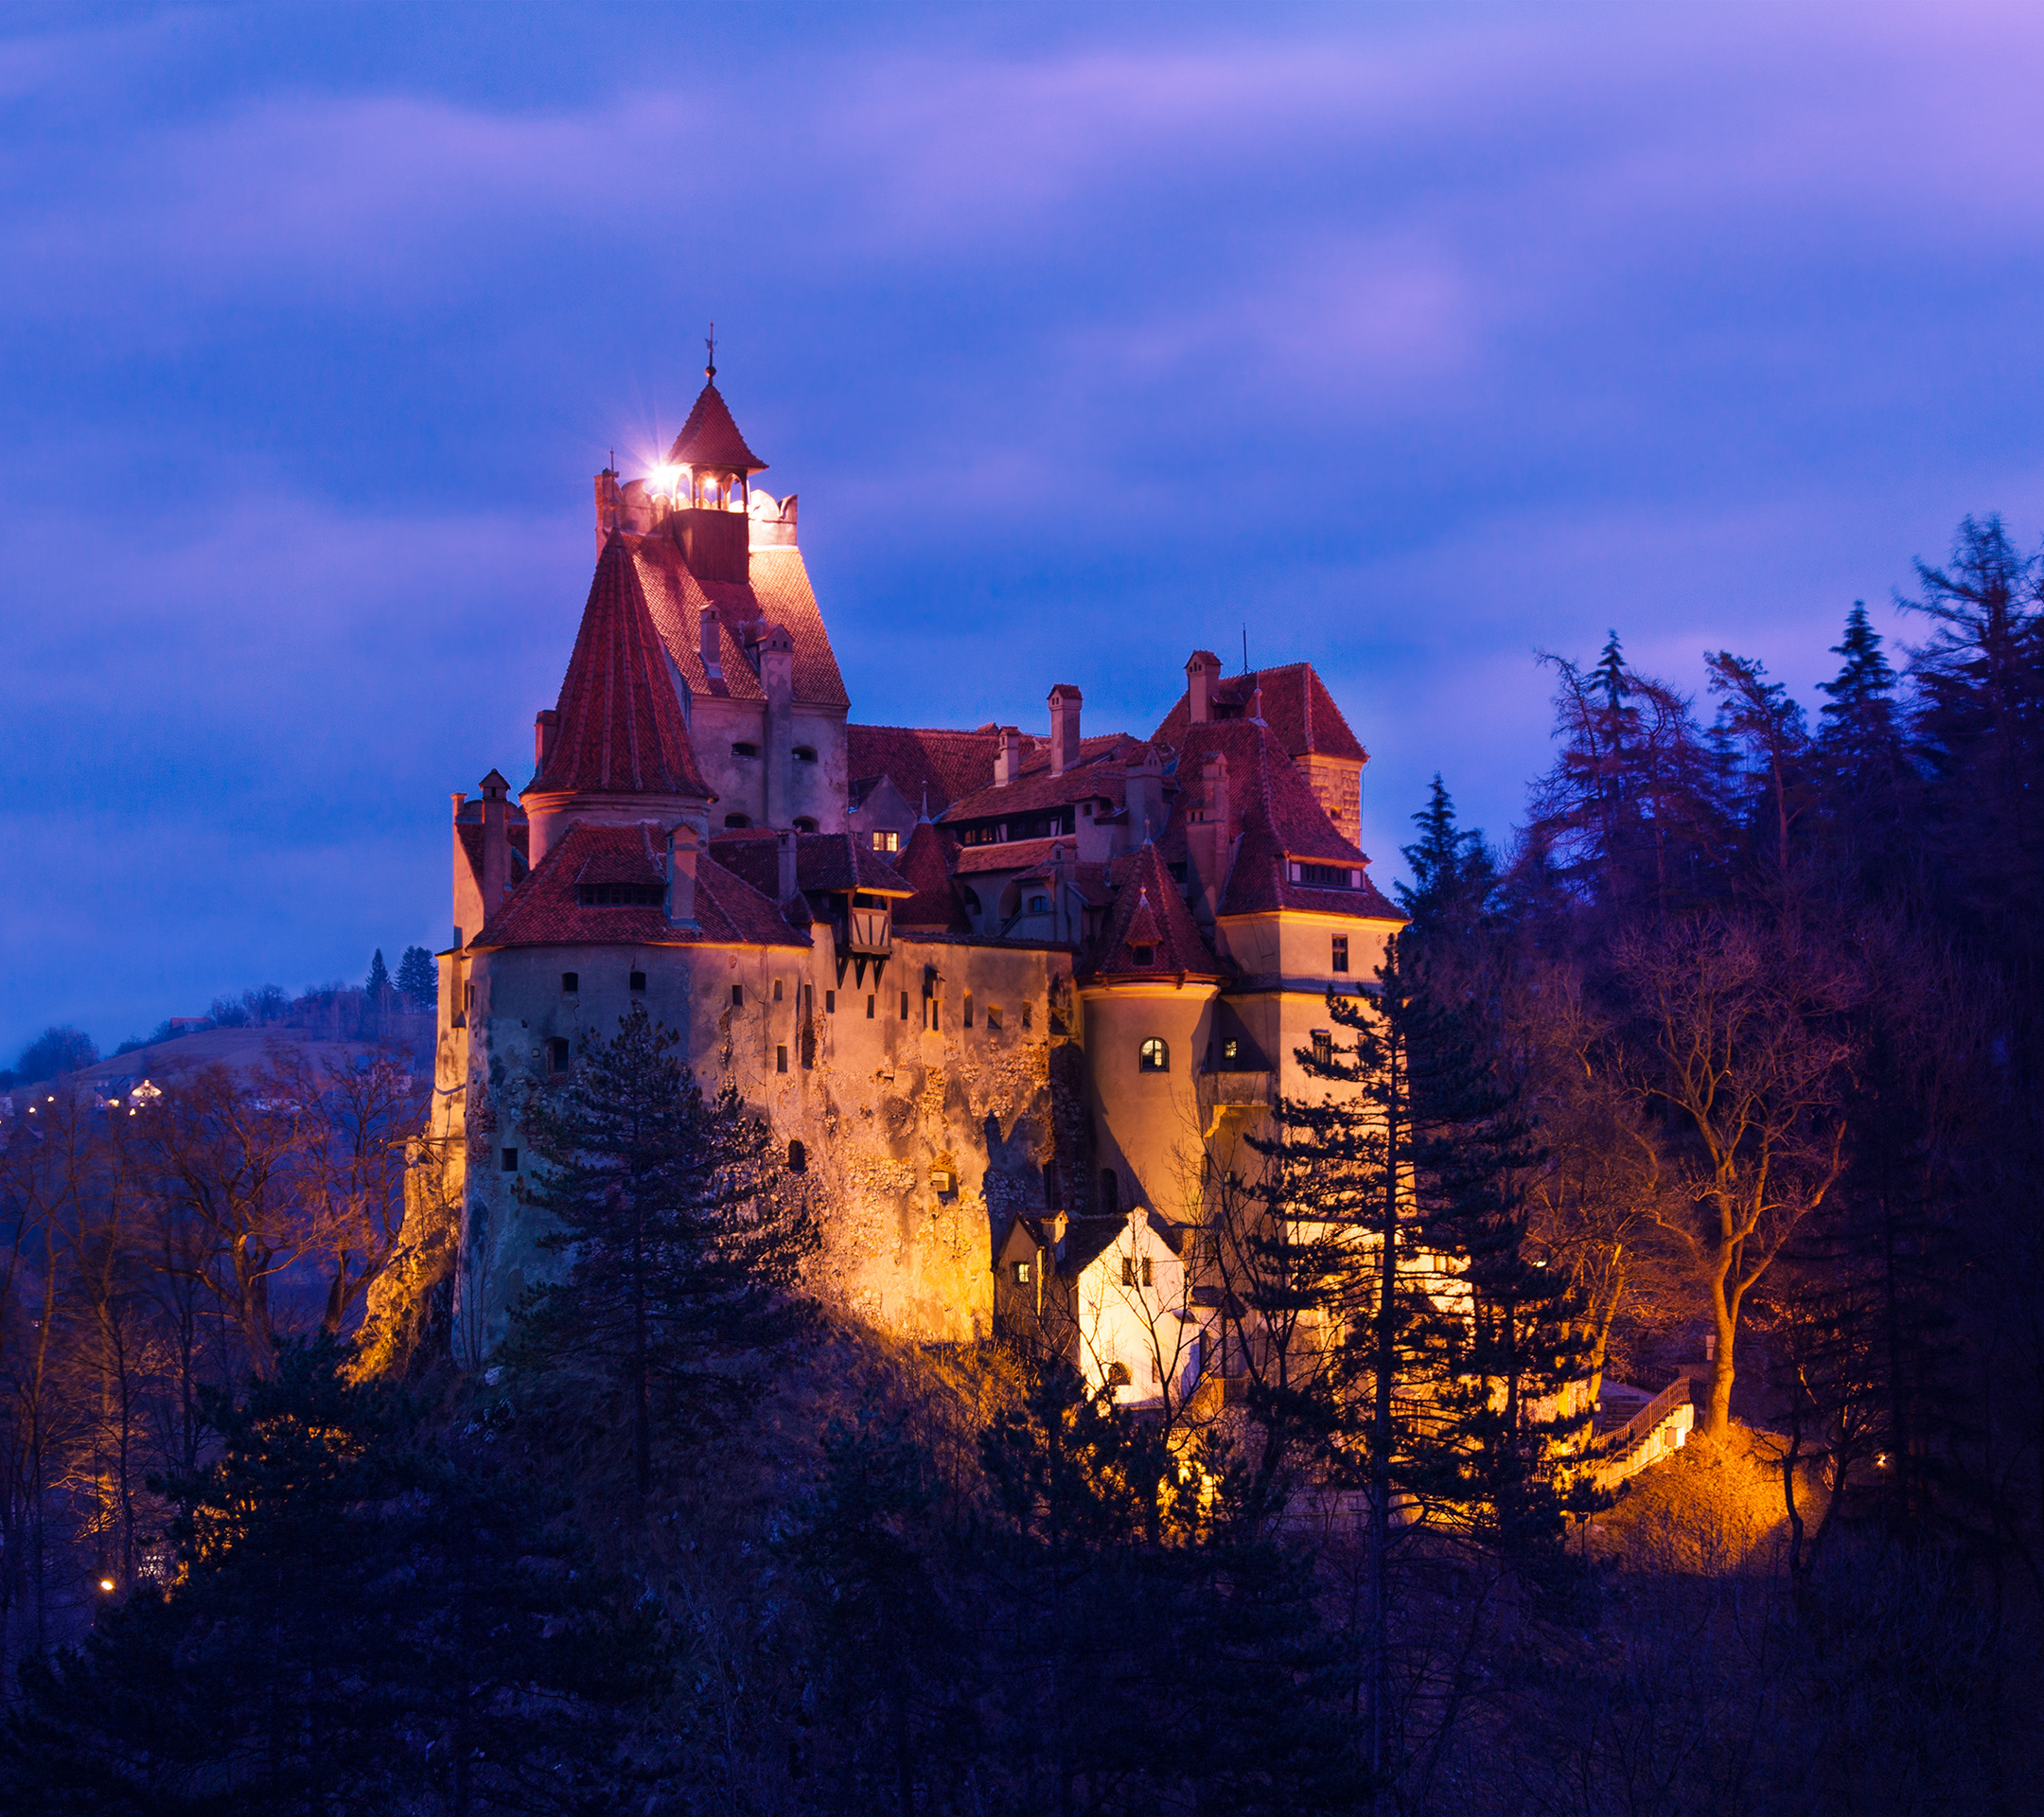 梦幻般的城堡美图,好想去看看!